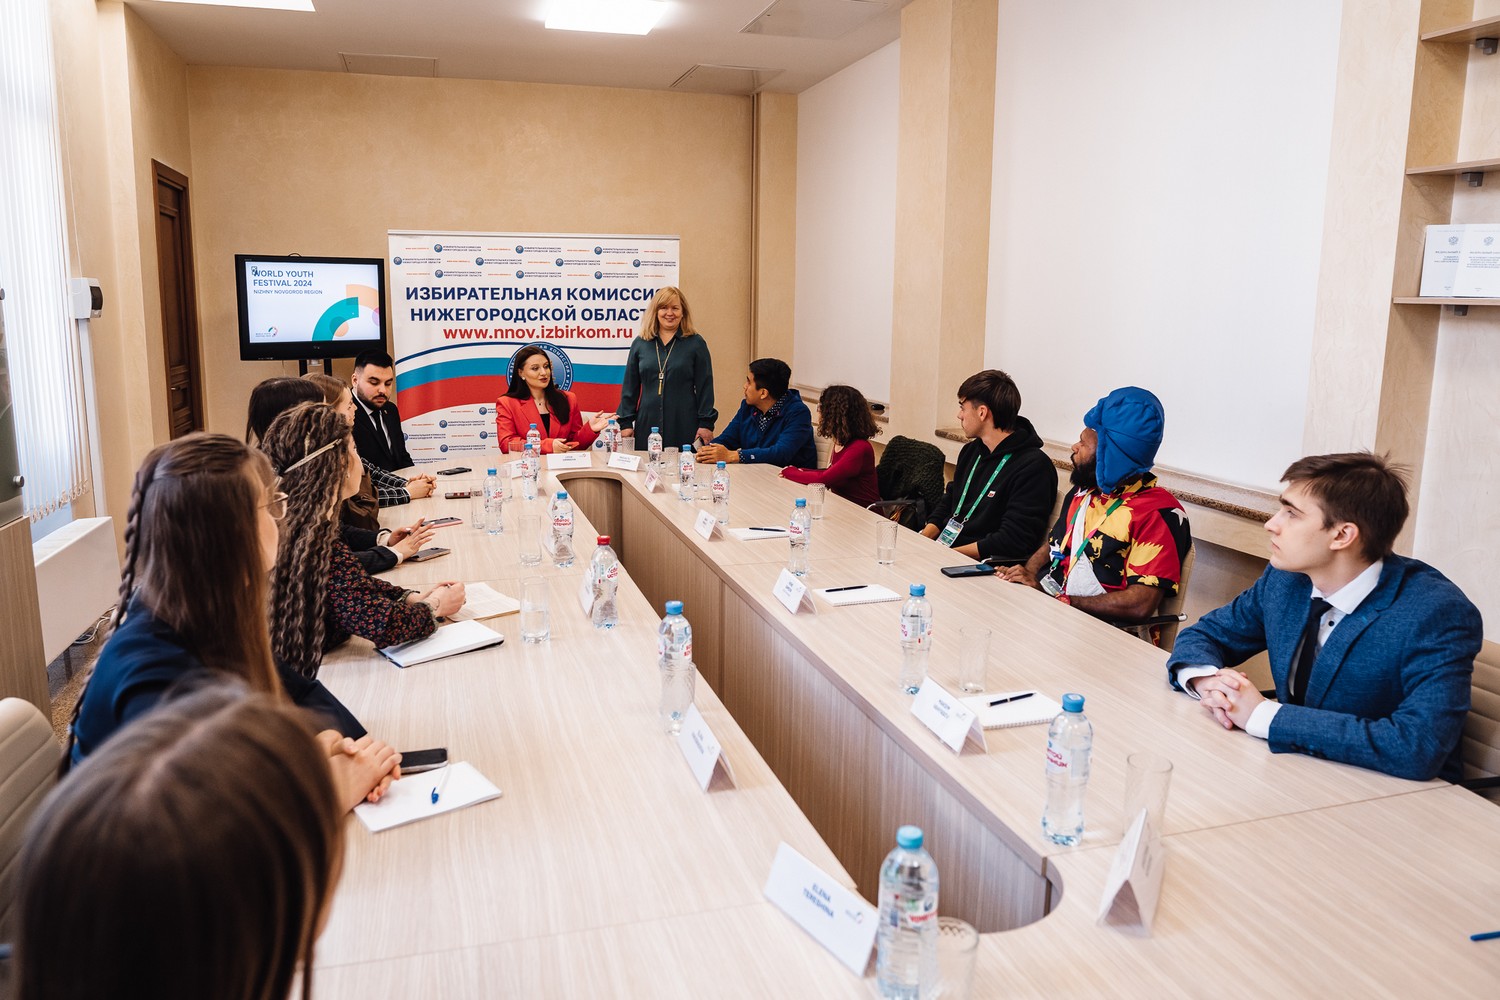 Участники Всемирного фестиваля молодежи обсудили в Нижнем Новгороде практику и тенденции избирательных процессов в разных странах